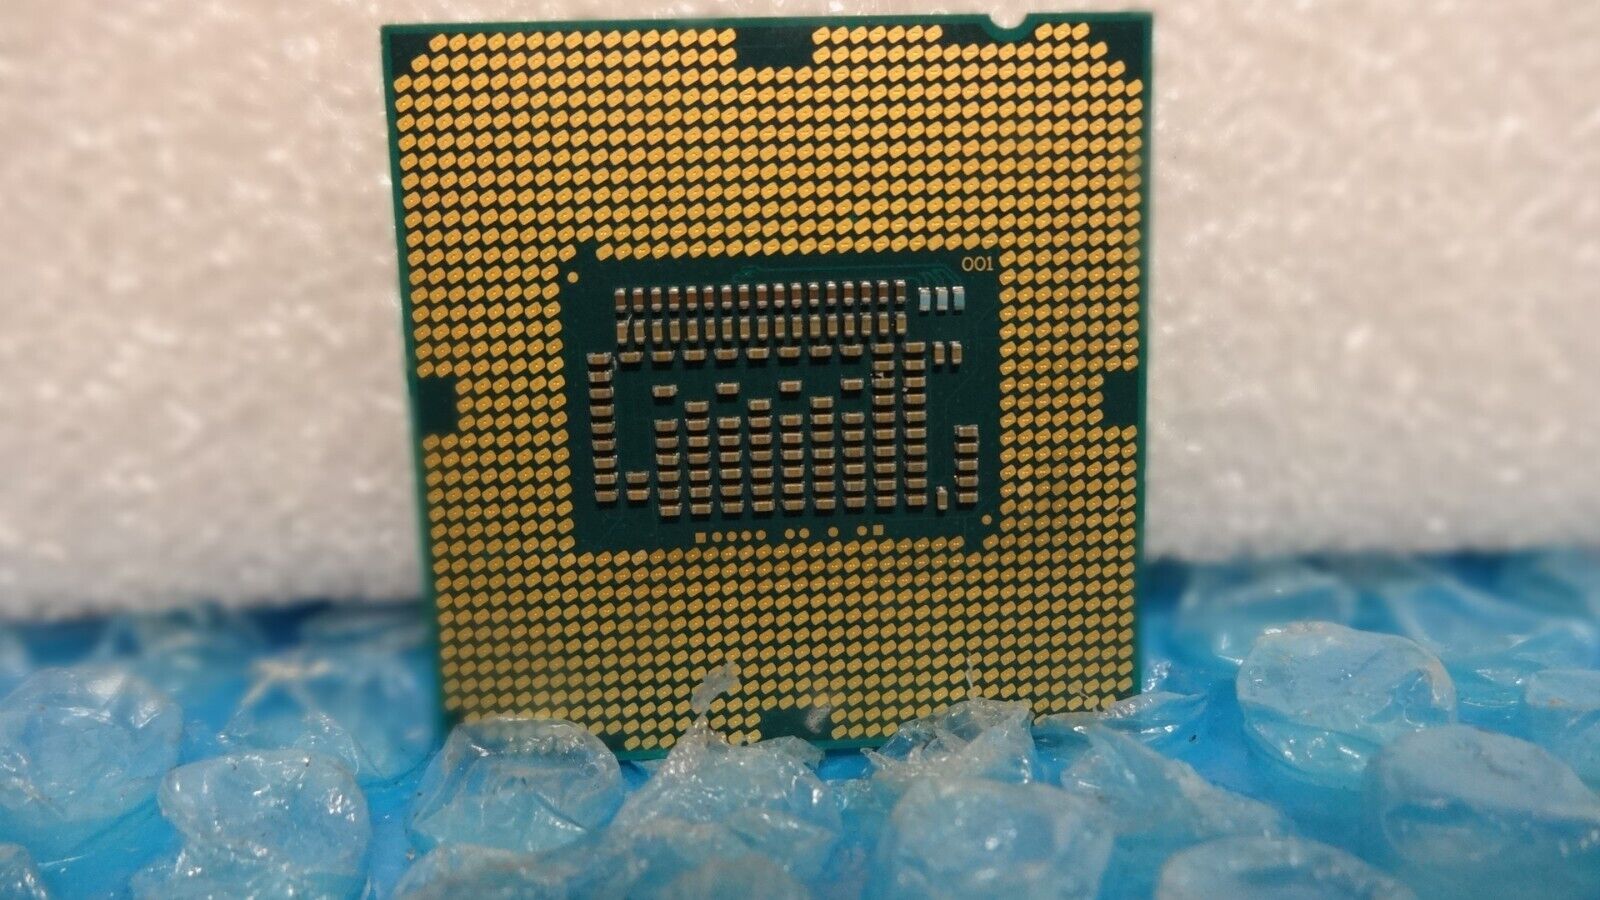 Intel Core i5-3470S 2.9GHz Quad-Core CPU Computer Processor LGA1155 Socket SR0TA